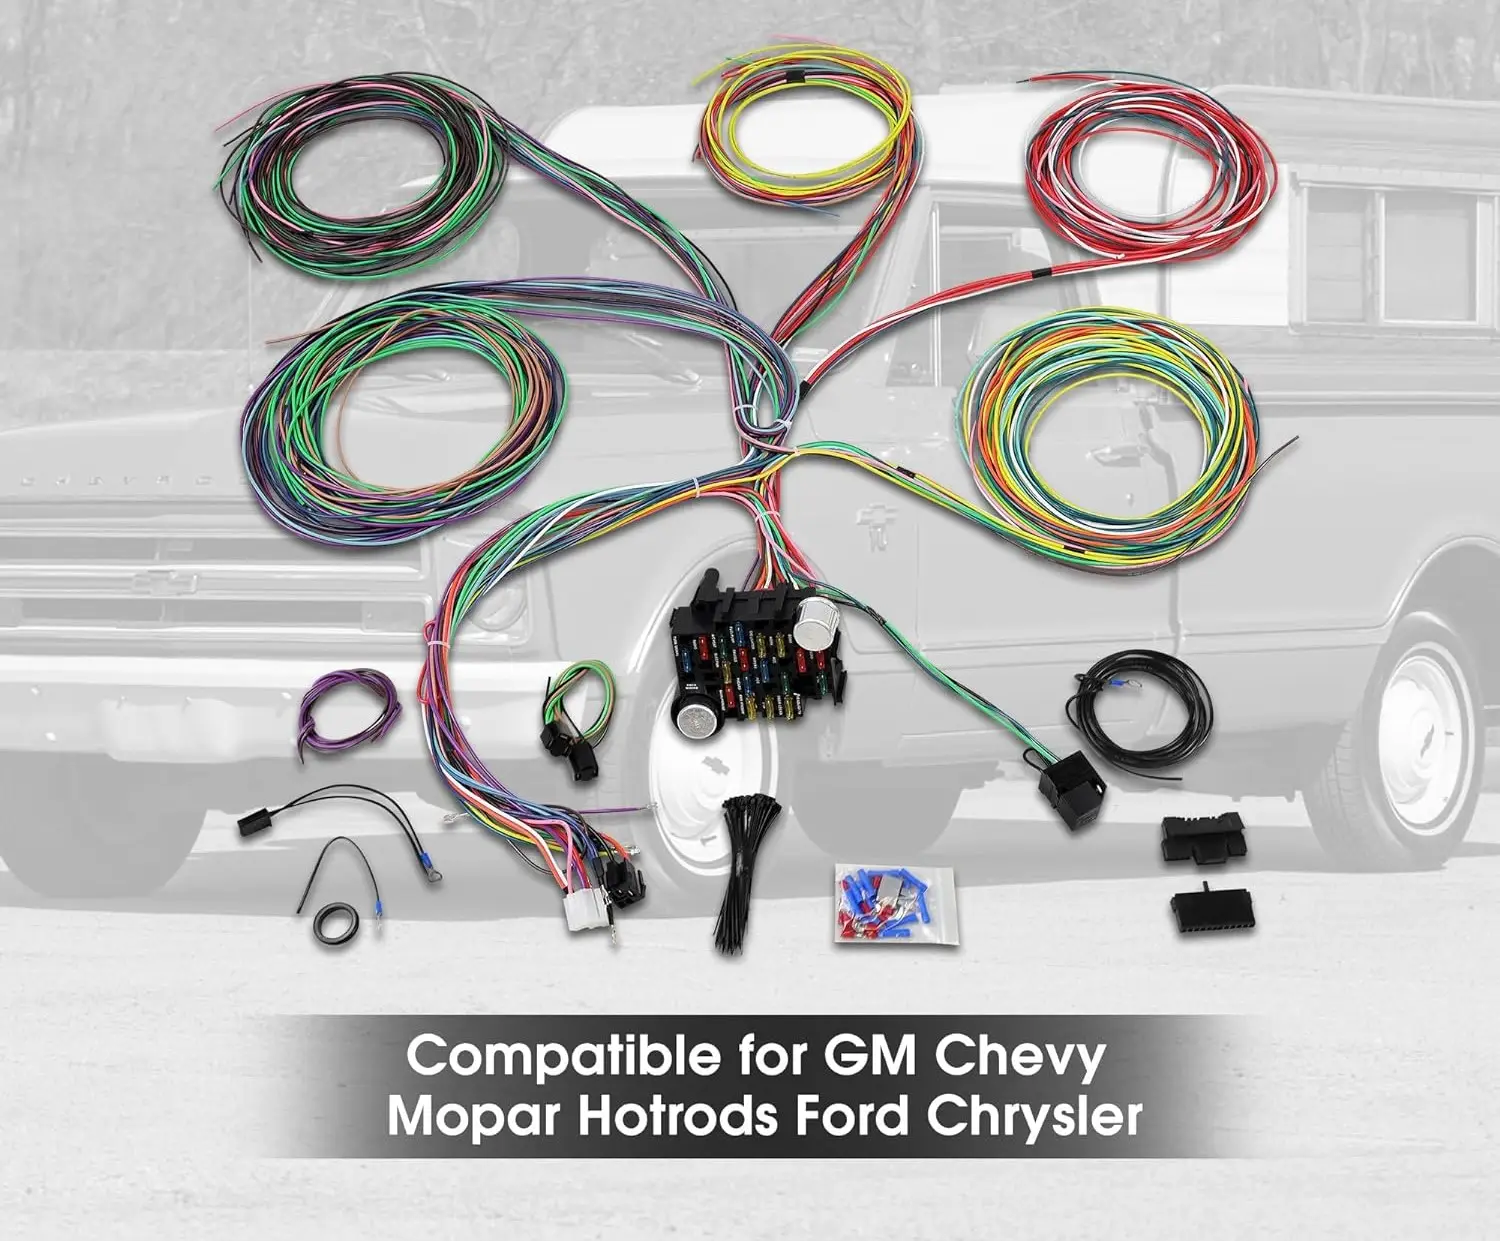 Универсальный 21-контурный жгут проводов, комплект сверхдлинного провода стандартного цвета, 17 предохранителей для GM Chevy Mopar Hotrods Ford Chrysler